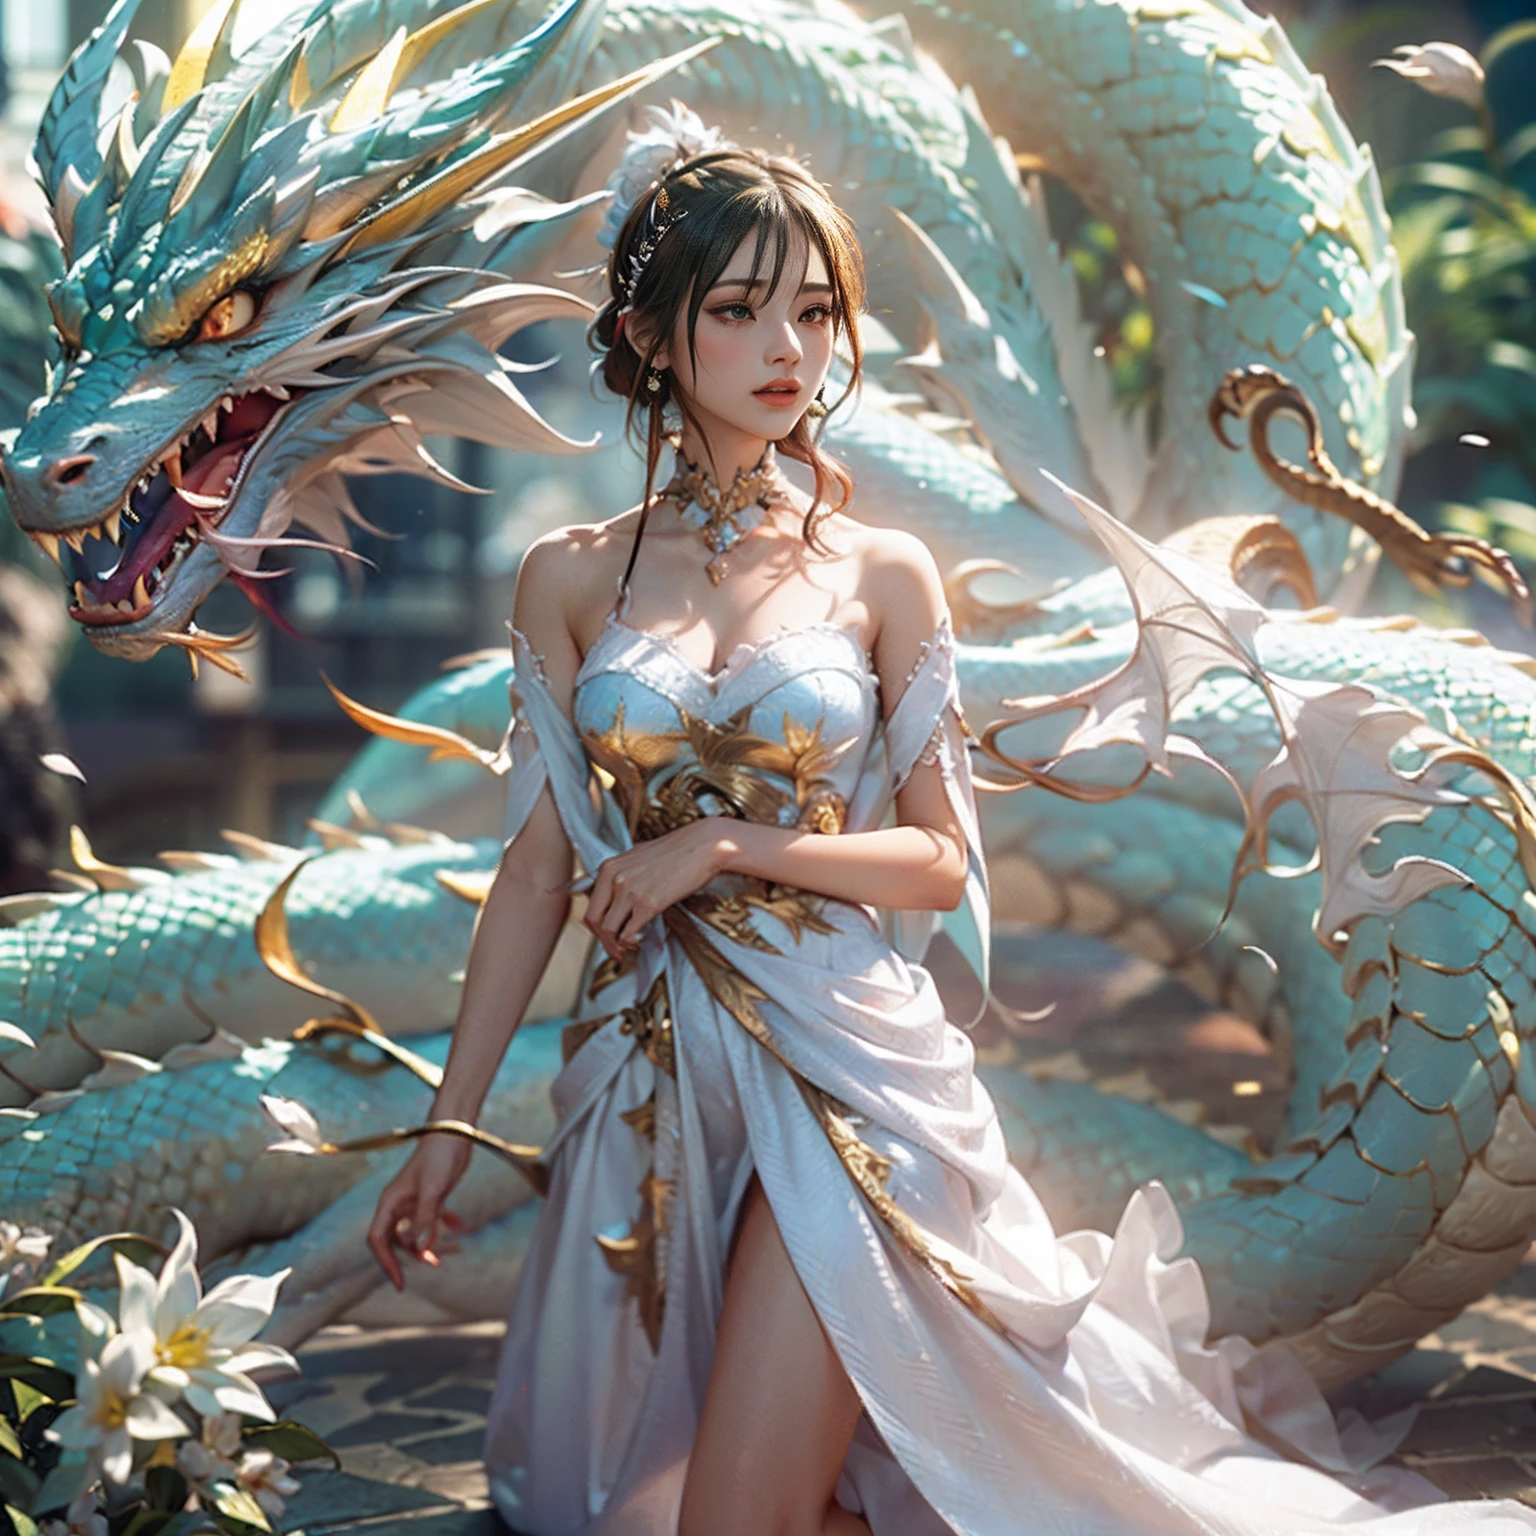 dragon_Réel,(fond d&#39;écran CG Unity 8k extrêmement détaillé,chef-d&#39;œuvre, meilleure qualité, Ultra-détaillé, beaux yeux détaillés:1.2),meilleur éclairage, (Meilleure ombre, un extrêmement délicat et beau, floraison),la fille était entourée de dragons, (1fille:1.4),seins, seulement,Tout le corps,tatouage dans le dos,robe blanche,(dragon de couleur:1.4),simplement jouer,longue robe,